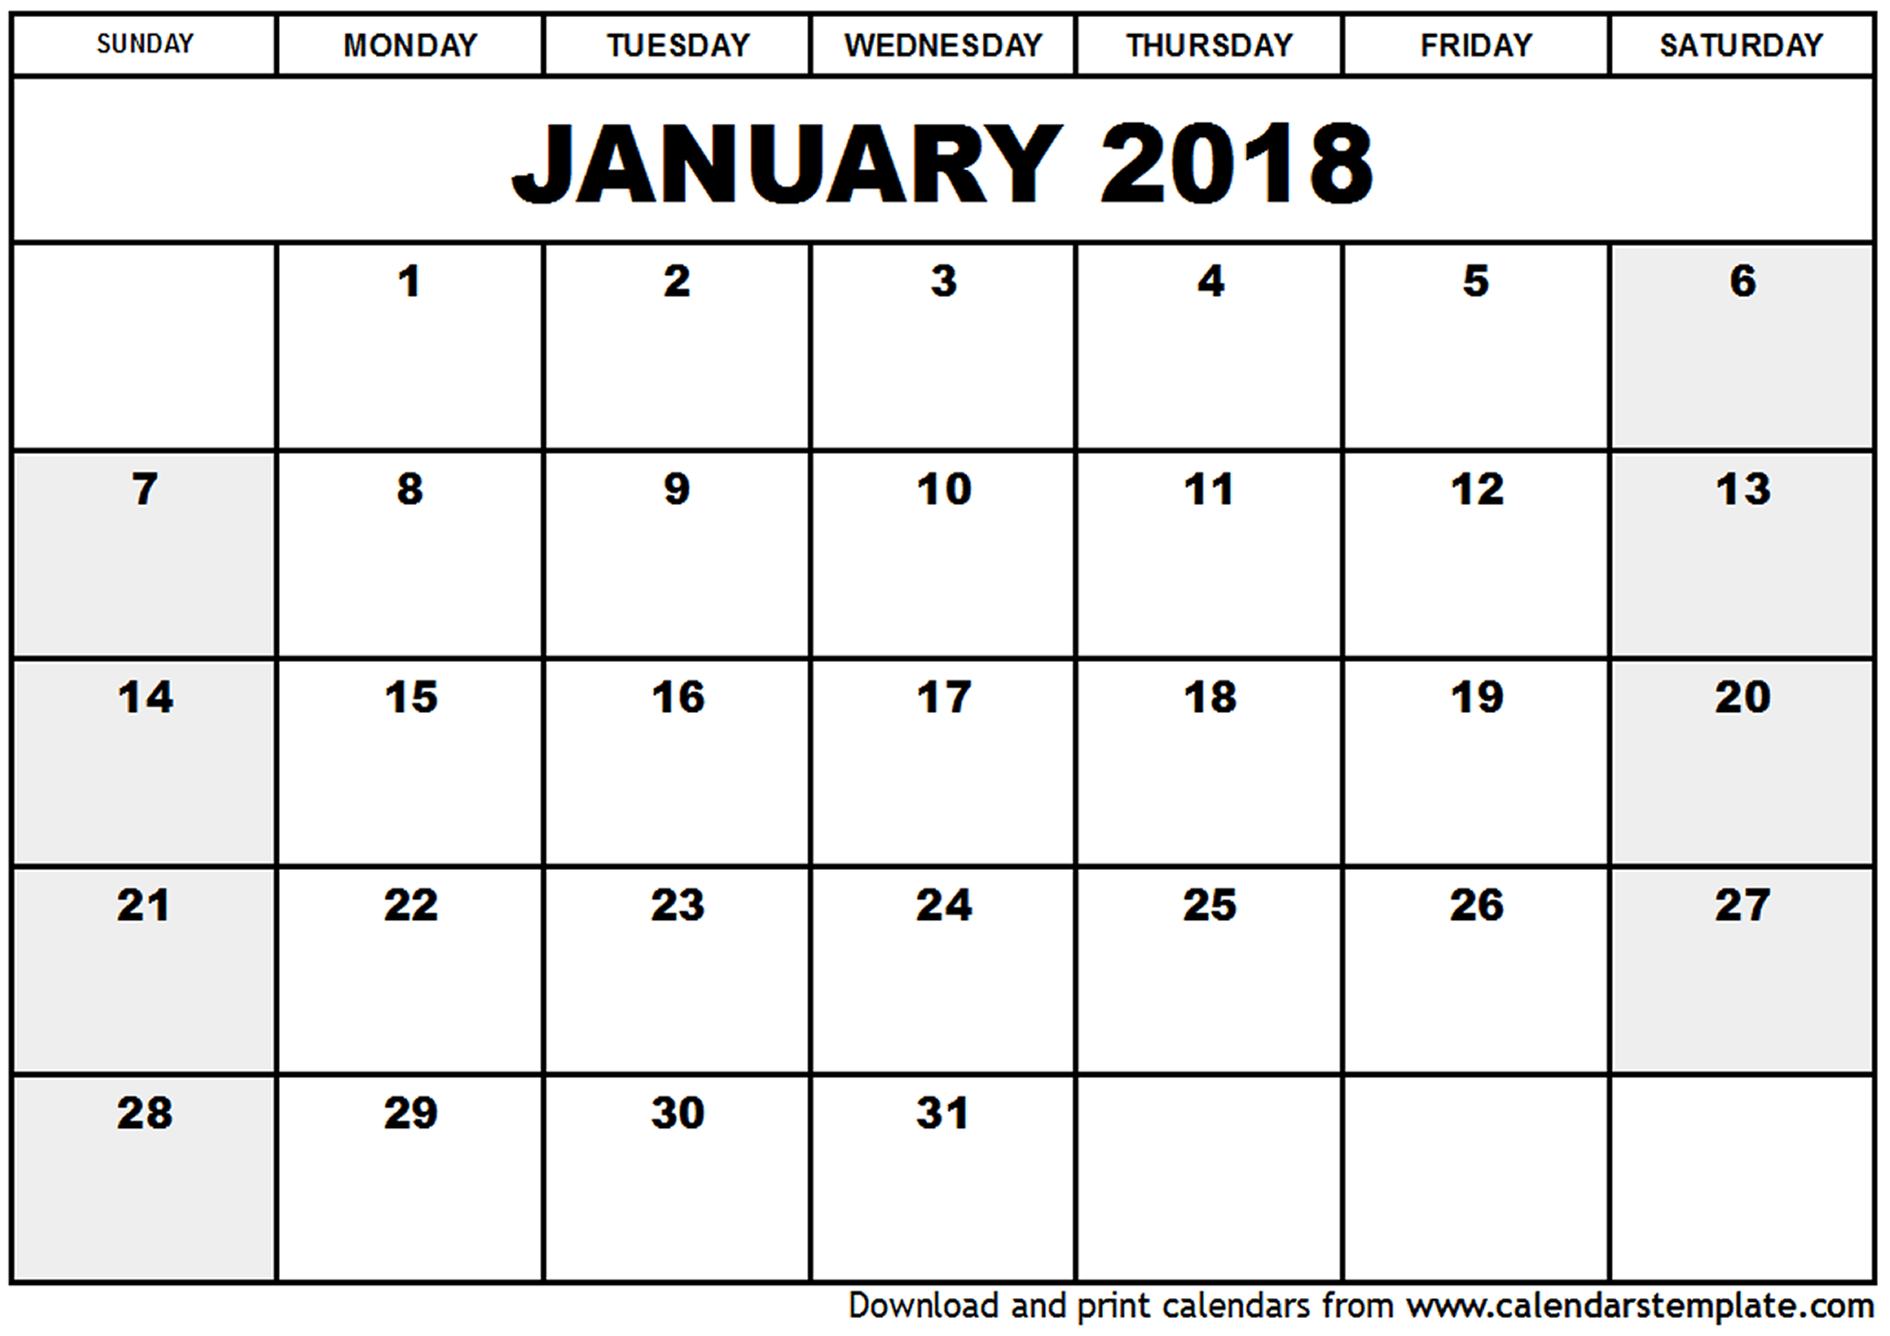 January 2018 Calendar Printable | 2017 calendar with holidays